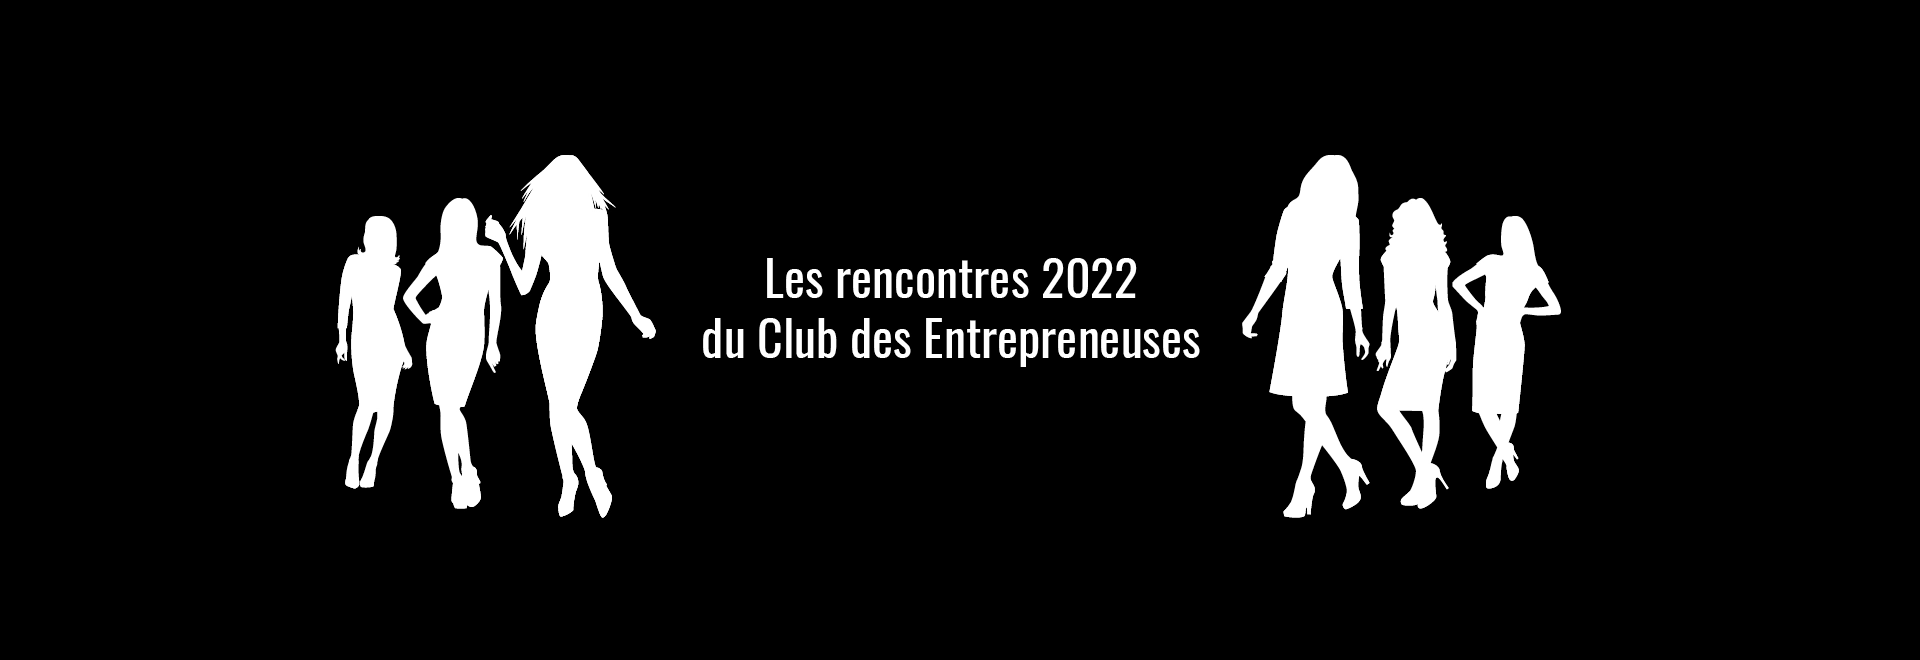 LE CLUB DES ENTREPRENEUSES-LES RENCONTRES 2022